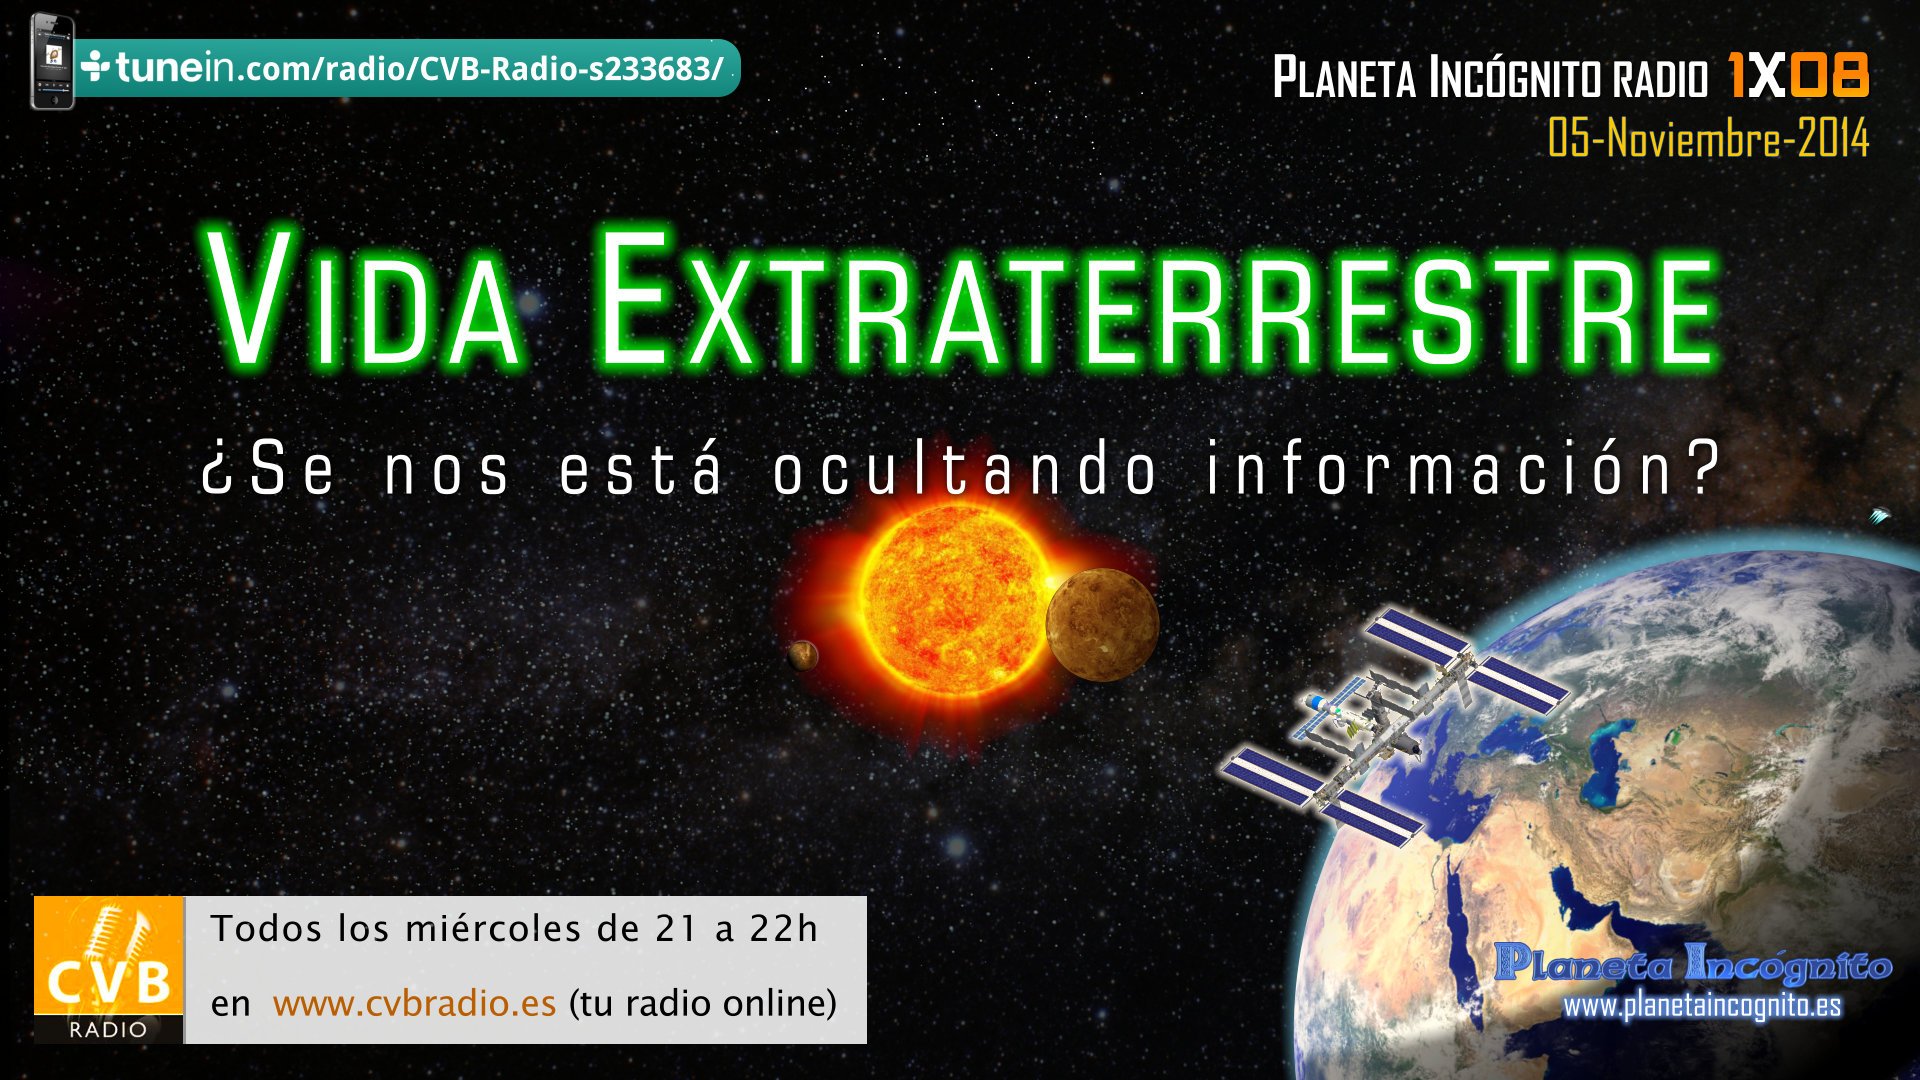 Vida1, Misterio y Ciencia en Planeta Incógnito: Revista web y podcast